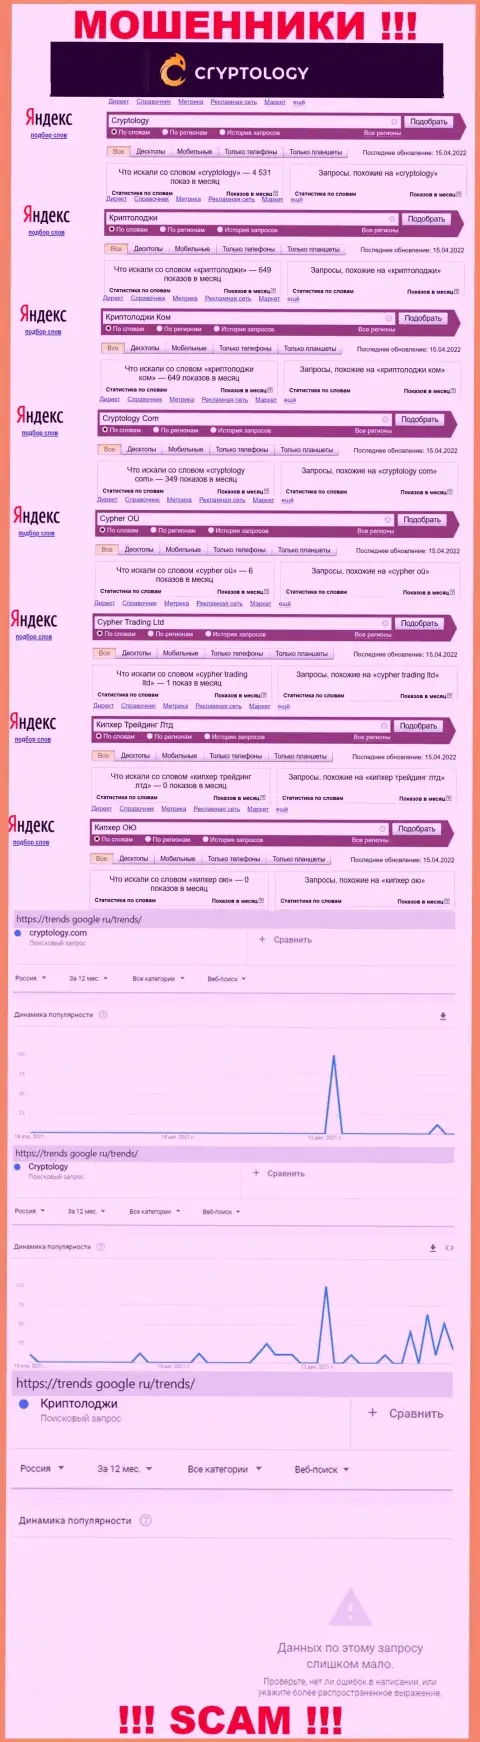 Количество онлайн-запросов в поисковиках глобальной сети internet по бренду воров Криптолоджи Ком